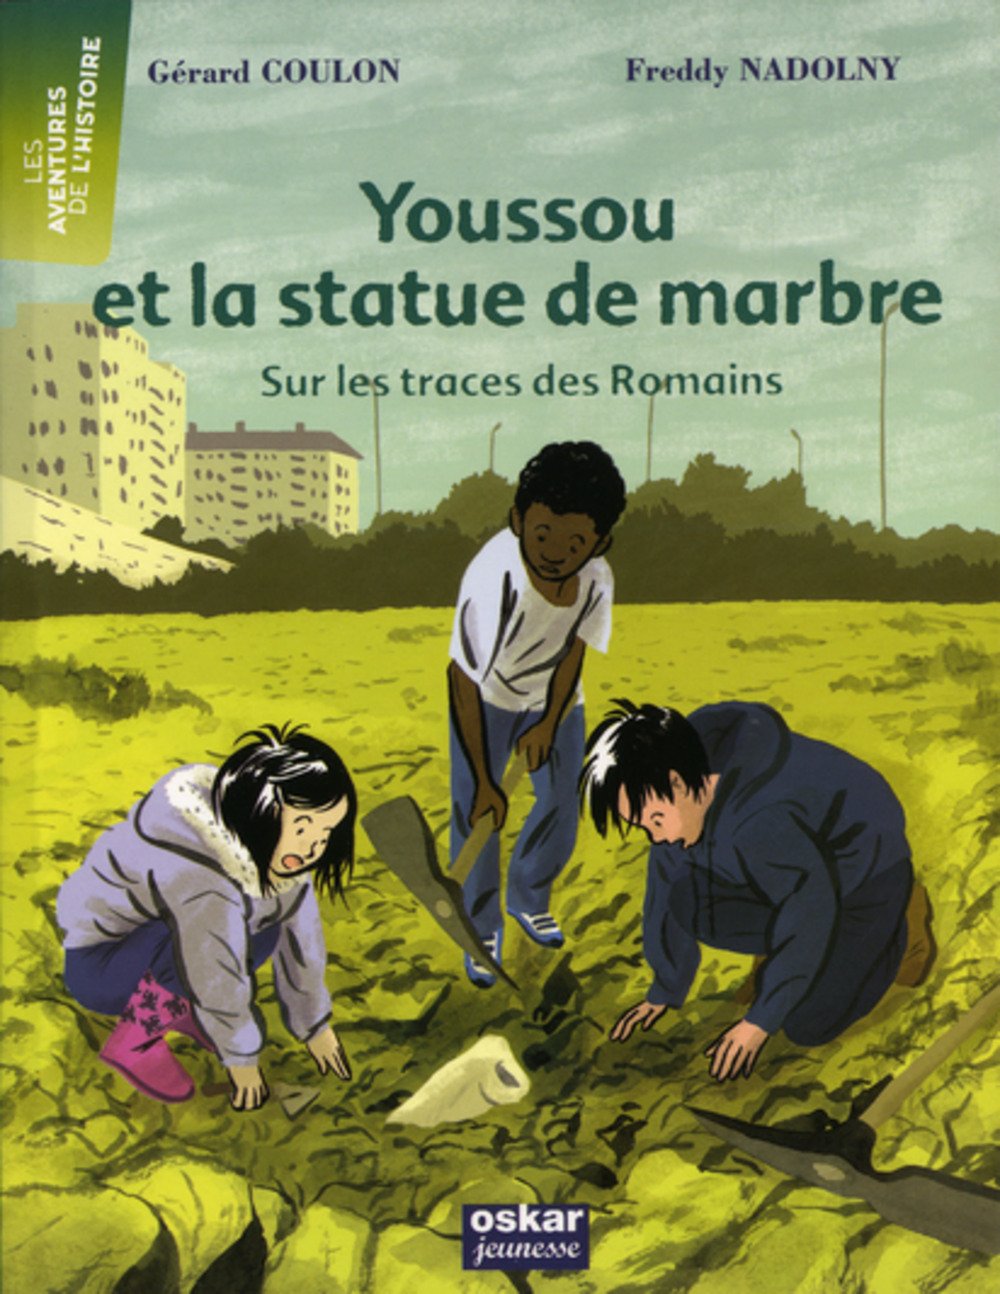 Youssou et la statue de marbre. Sur les traces des Romains, 2010, 69 p. LIVRE POUR ENFANT